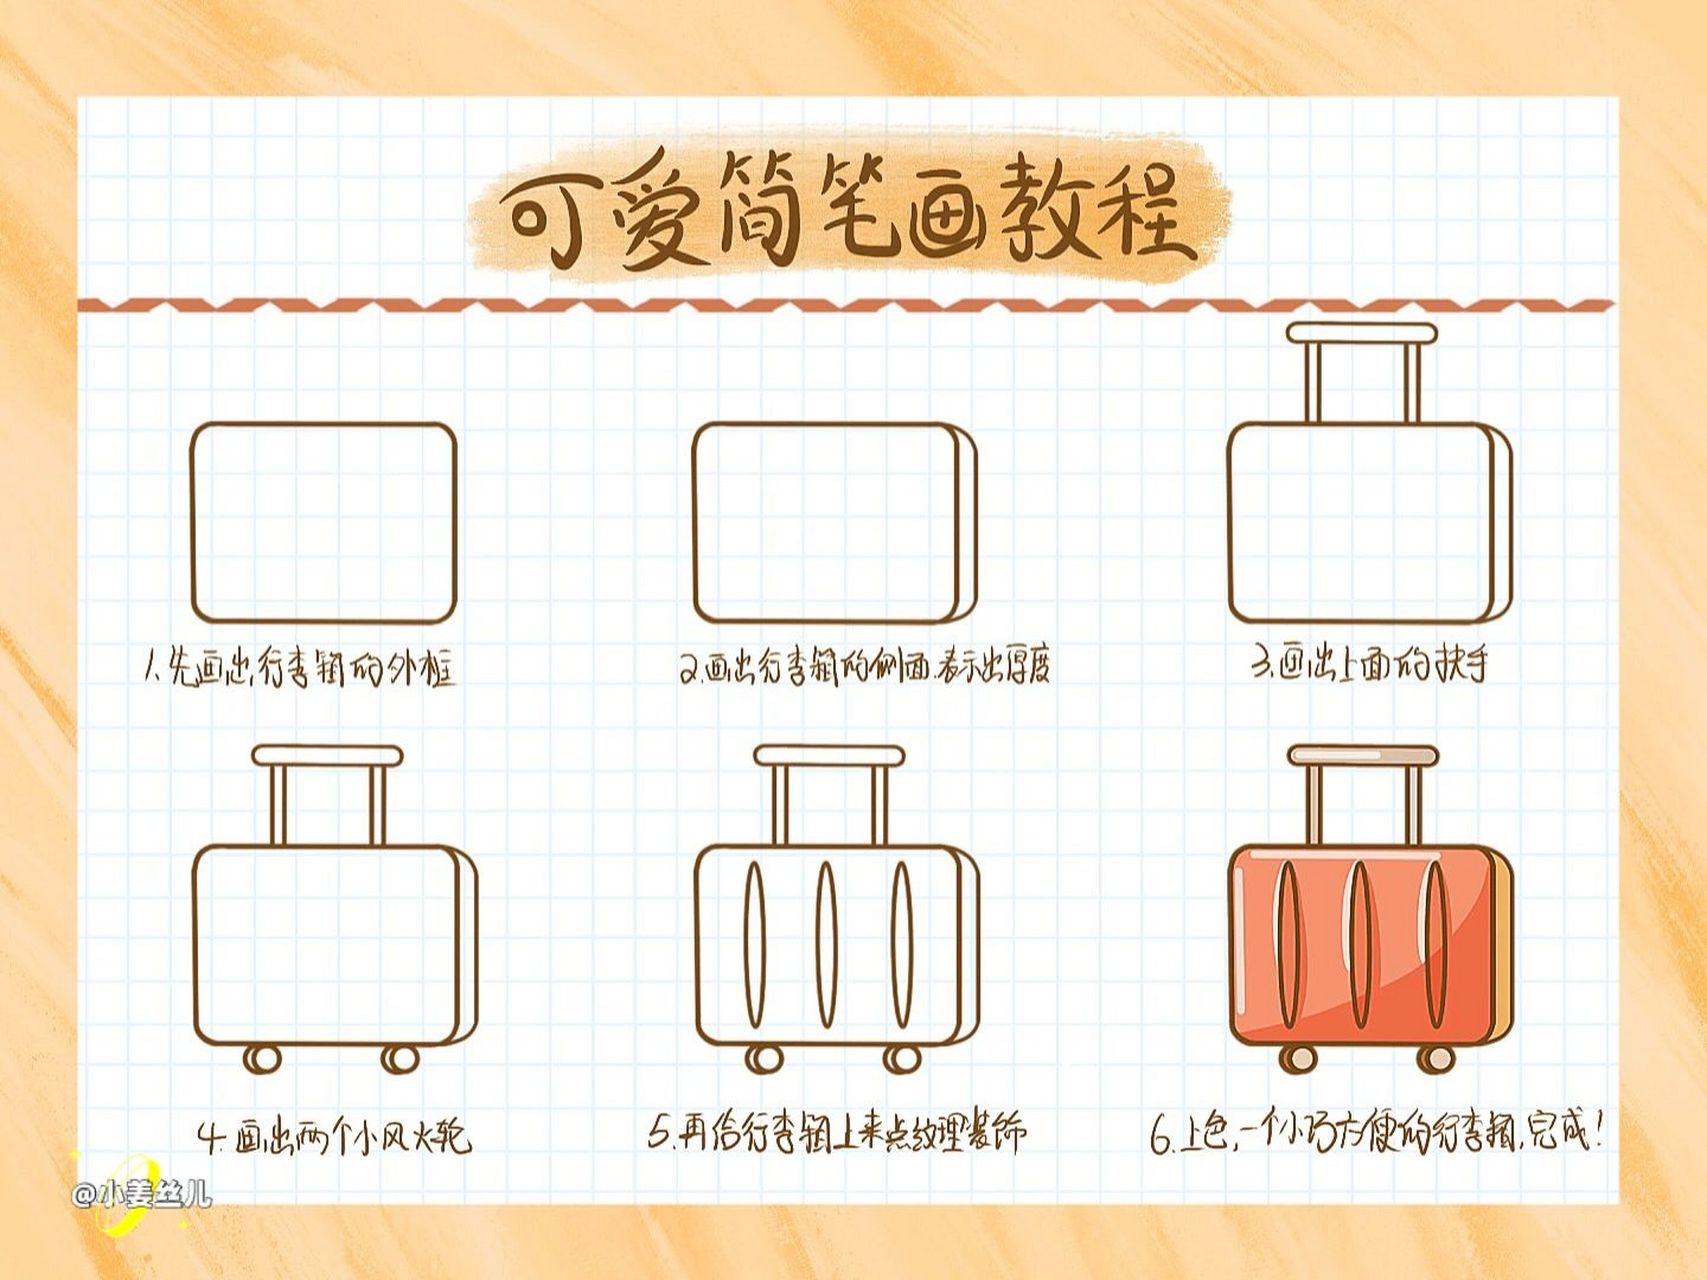 可爱的行李箱的画法图片